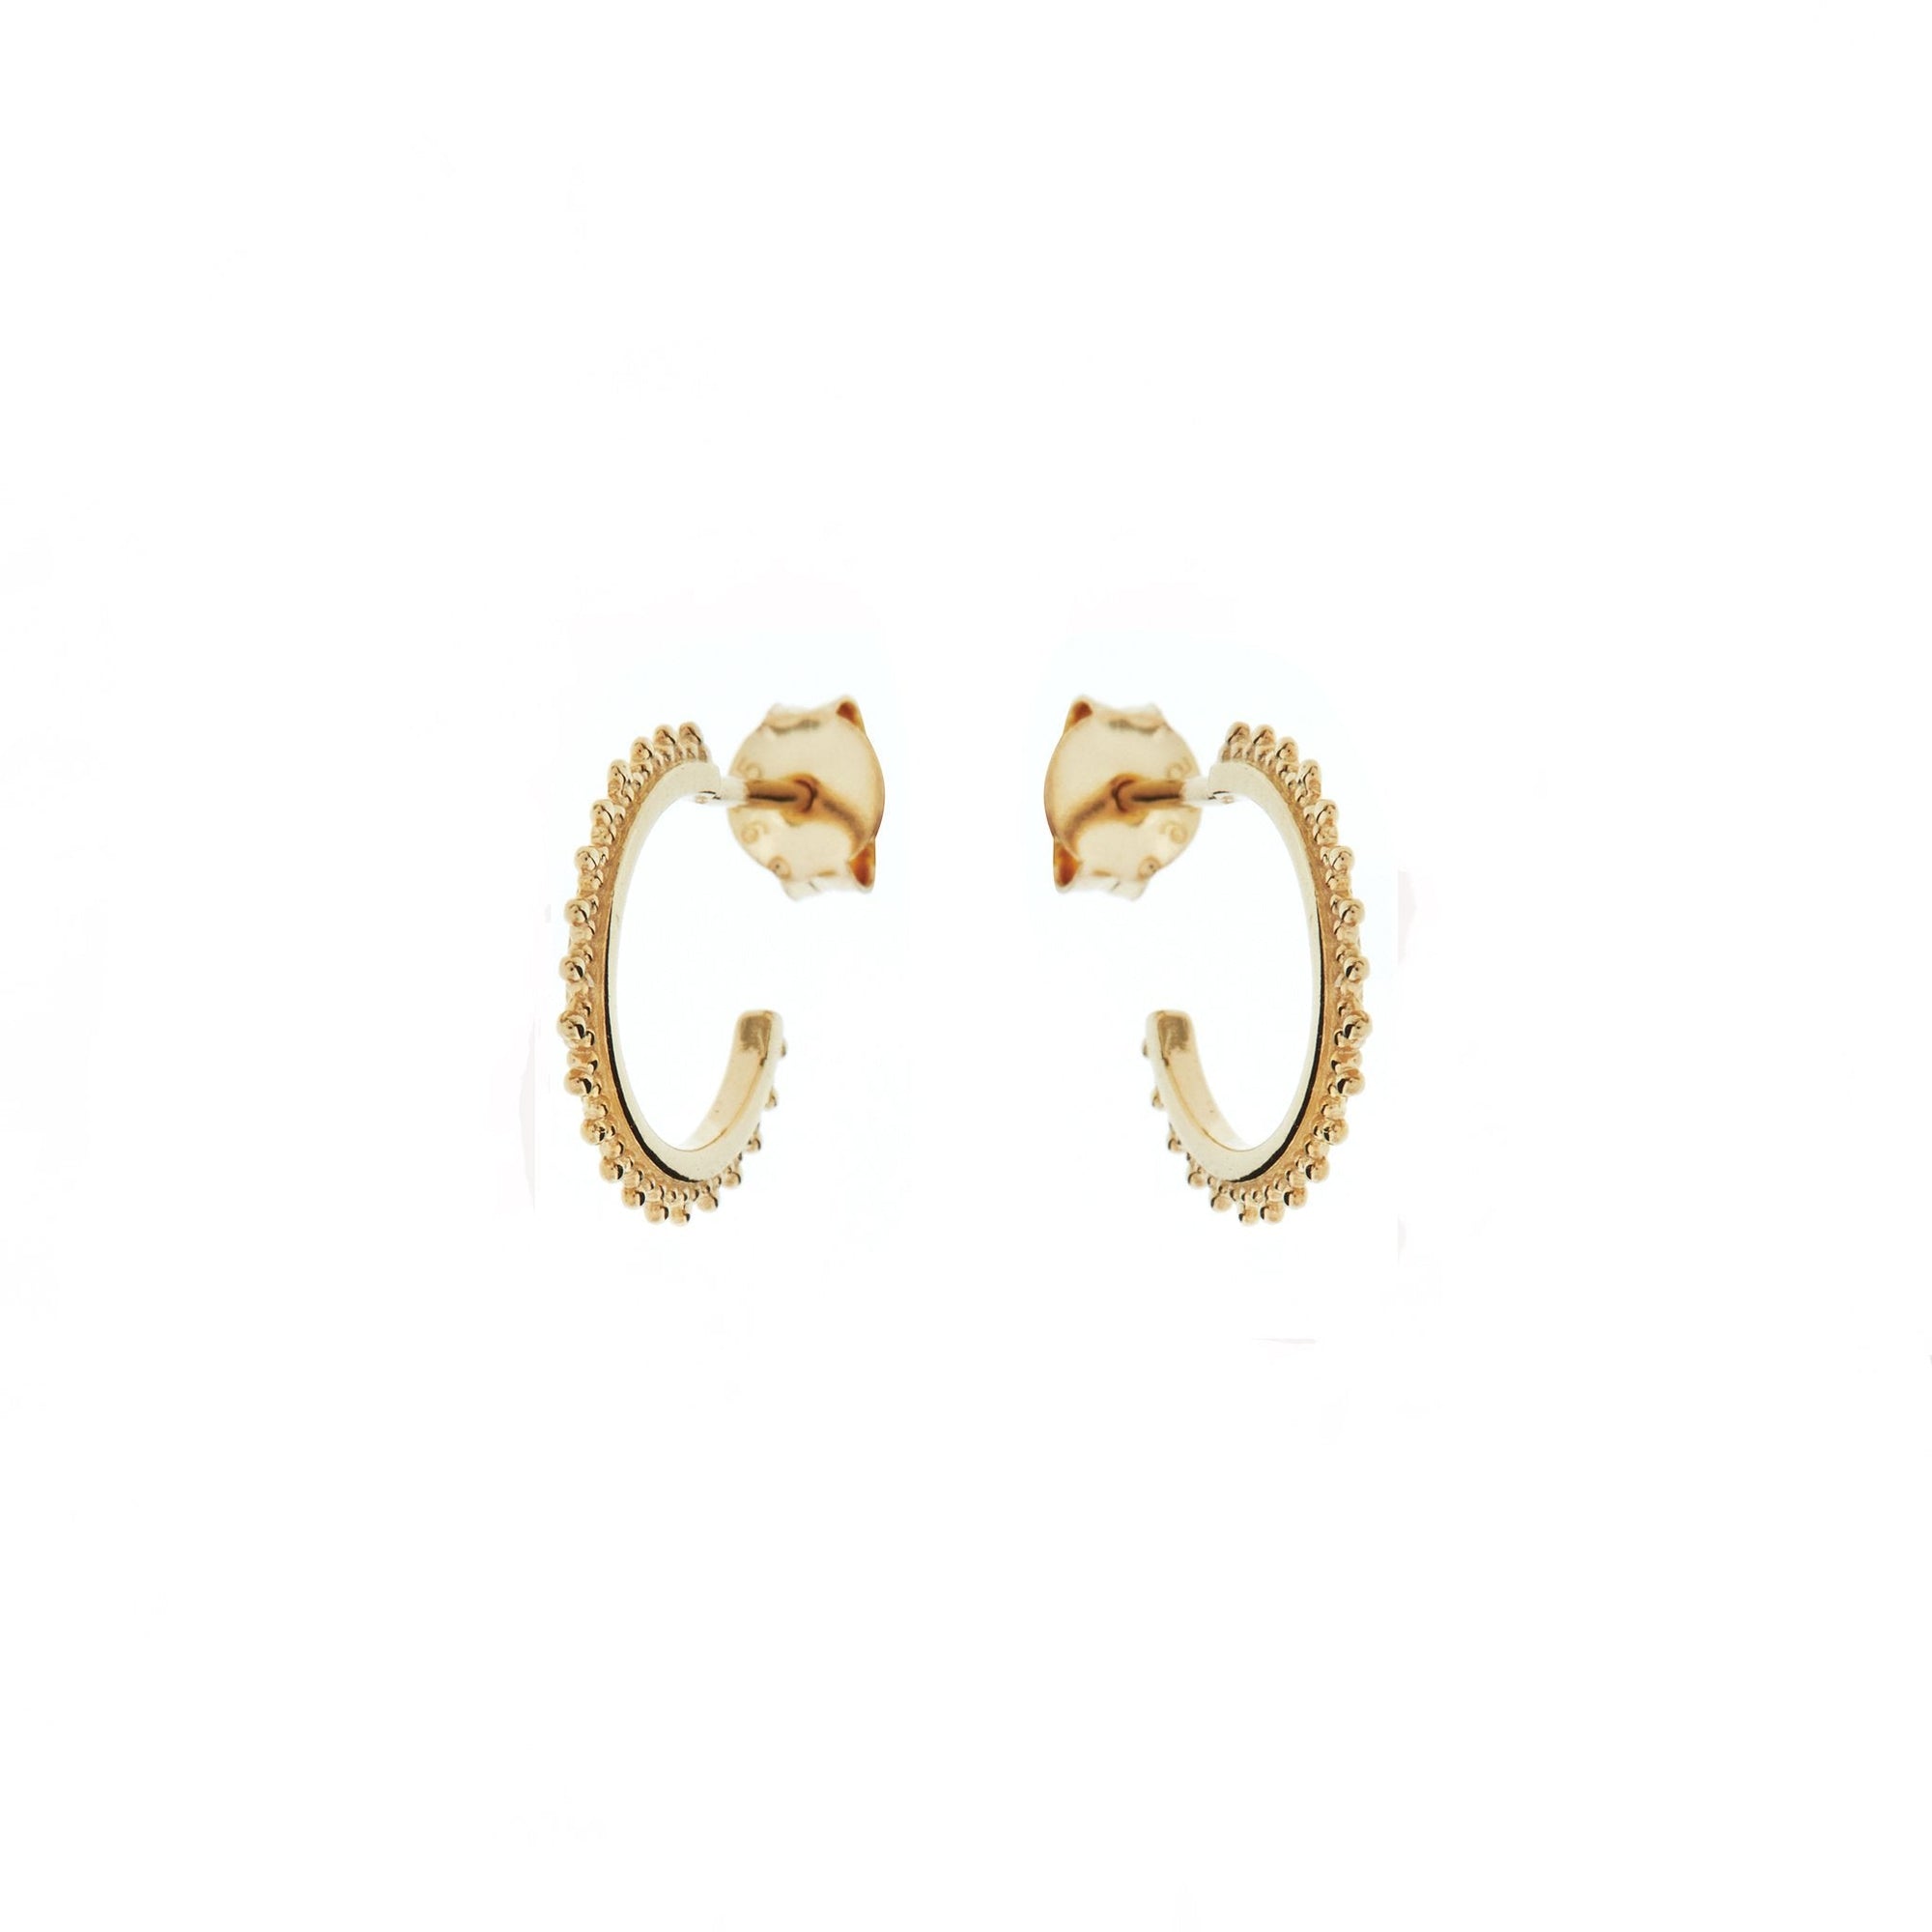 Duo Jewellery Earrings Duo Enchanted Hoop Earrings